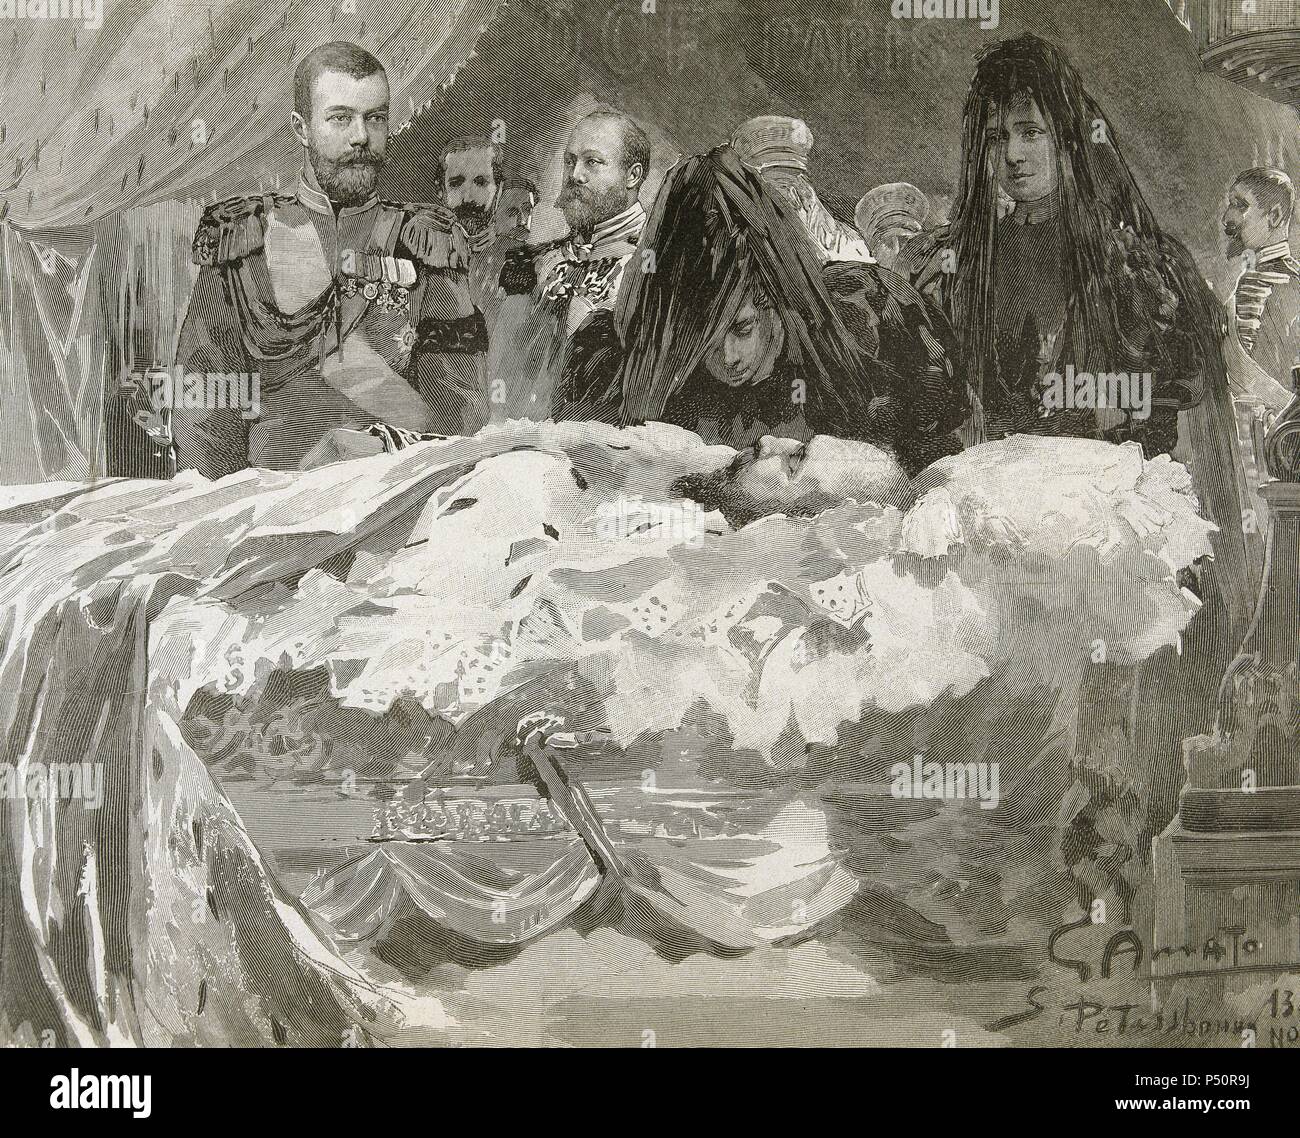 ALEJANDRO III (1845-1894). Zar de Rusia (1881-1894), hijo y sucesor de Alejandro II. 'MUERTE DE ALEJANDRO III. LA FAMILIA IMPERIAL, CON EL FUTURO ZAR NICOLAS II'. S. XIX. Grabado de 'L'Illustration'. Stock Photo